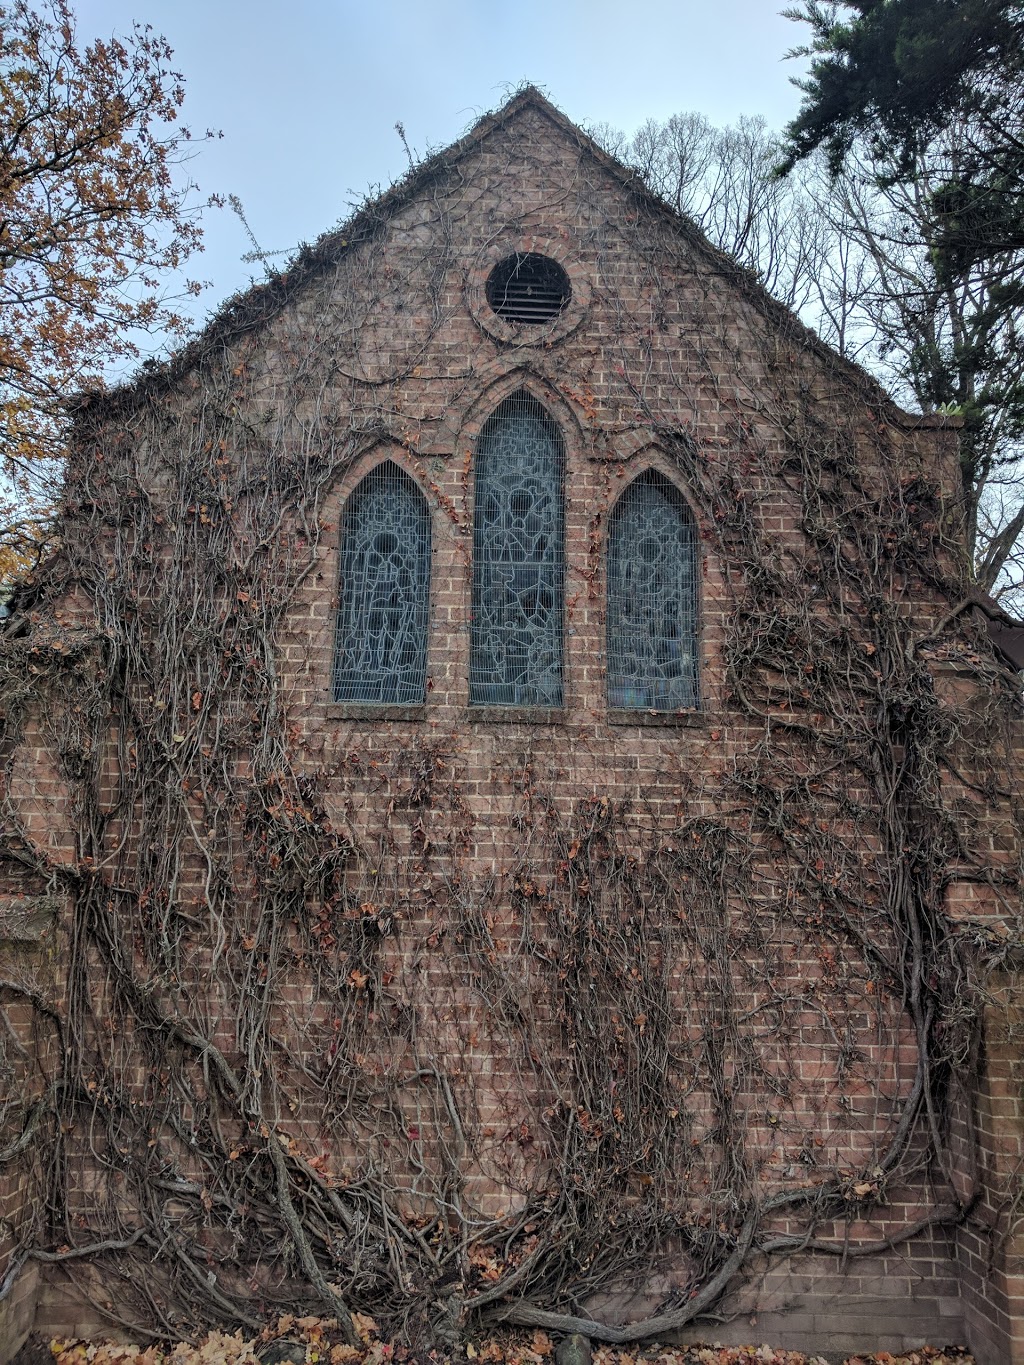 Gostwyck Chapel - All Saints Anglican Church | church | 1081 Gostwyck Rd, Gostwyck NSW 2358, Australia